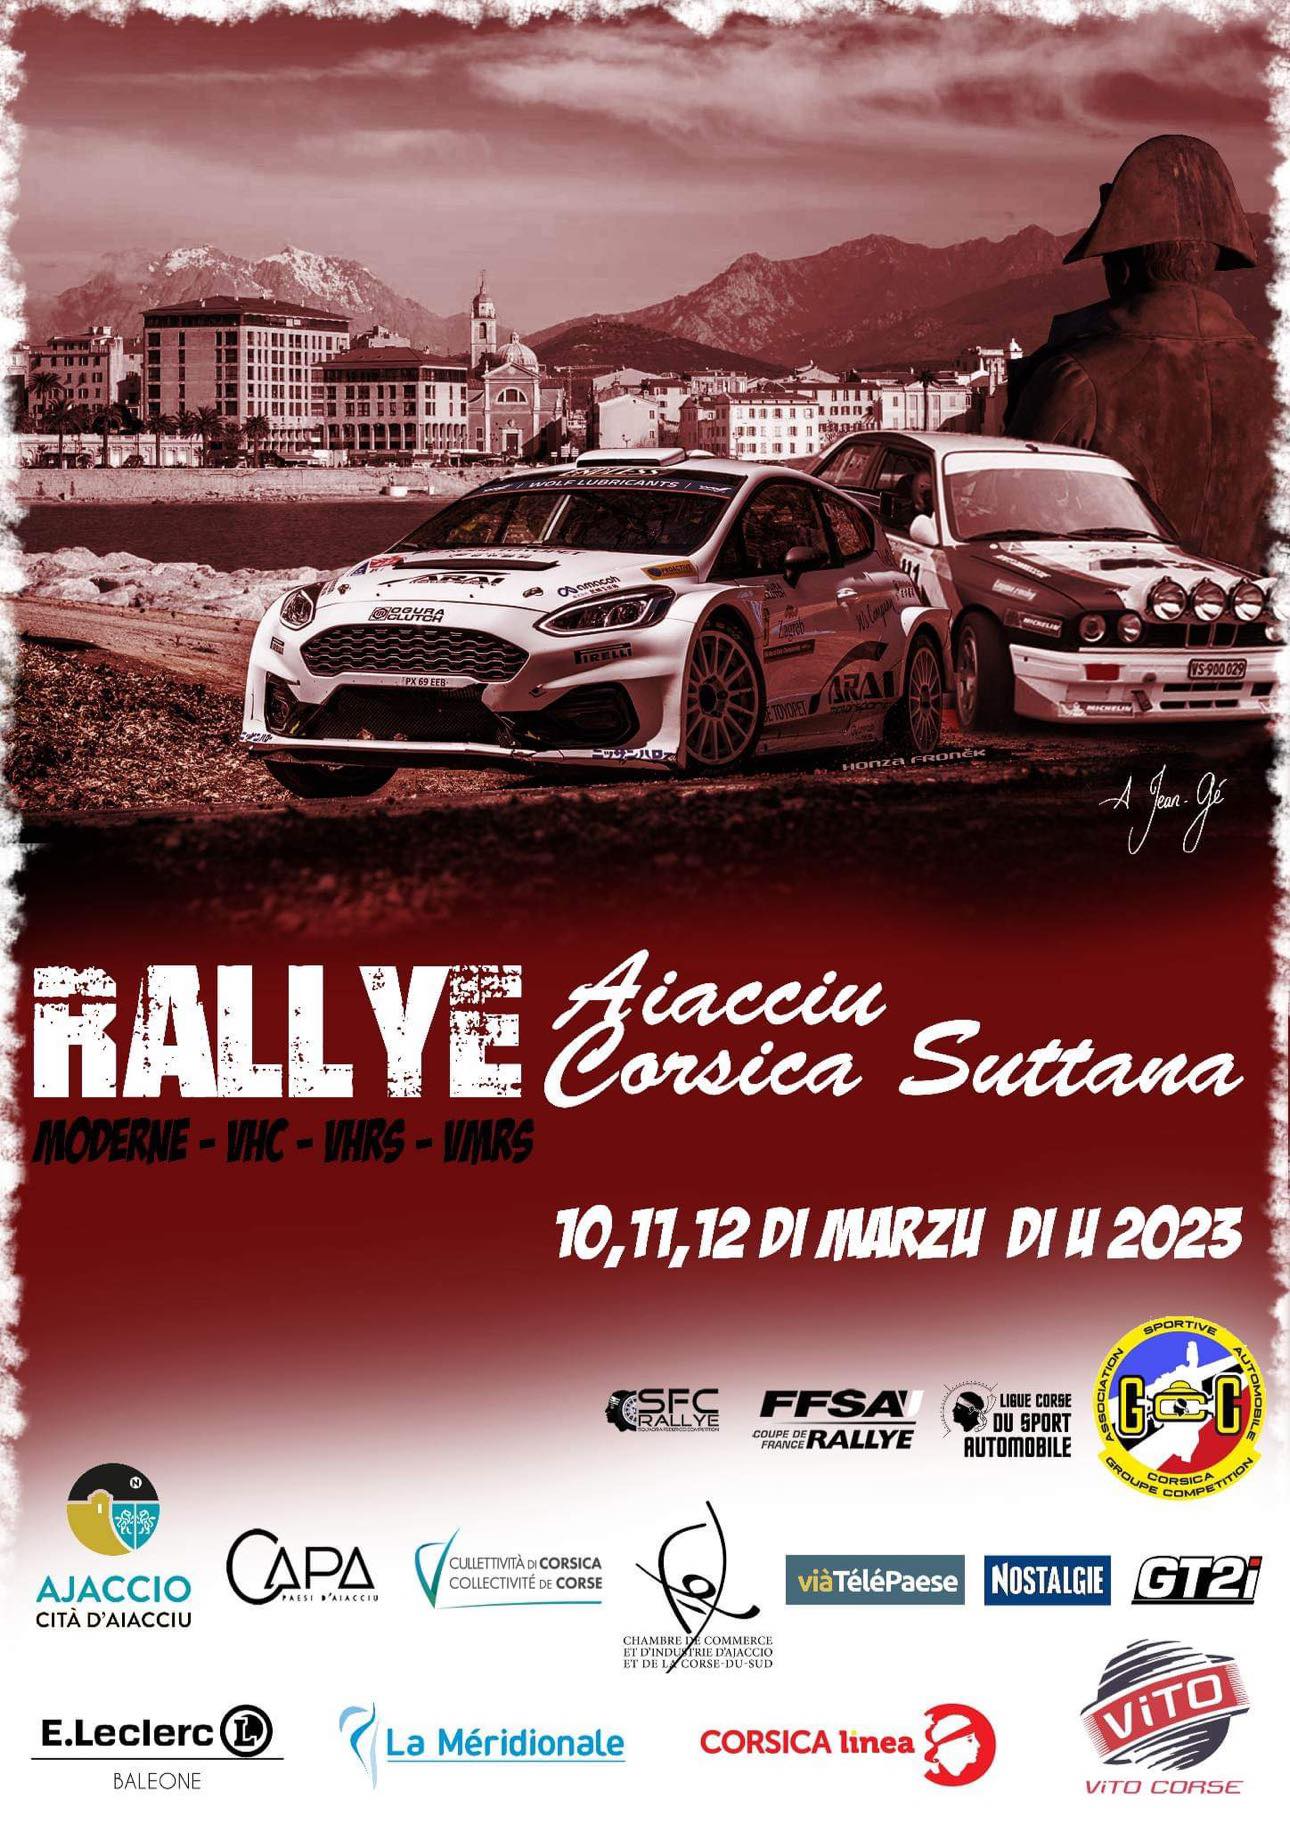 Rallye Aiacciu Corsica Suttana A Pietrosella samedi 11 mars